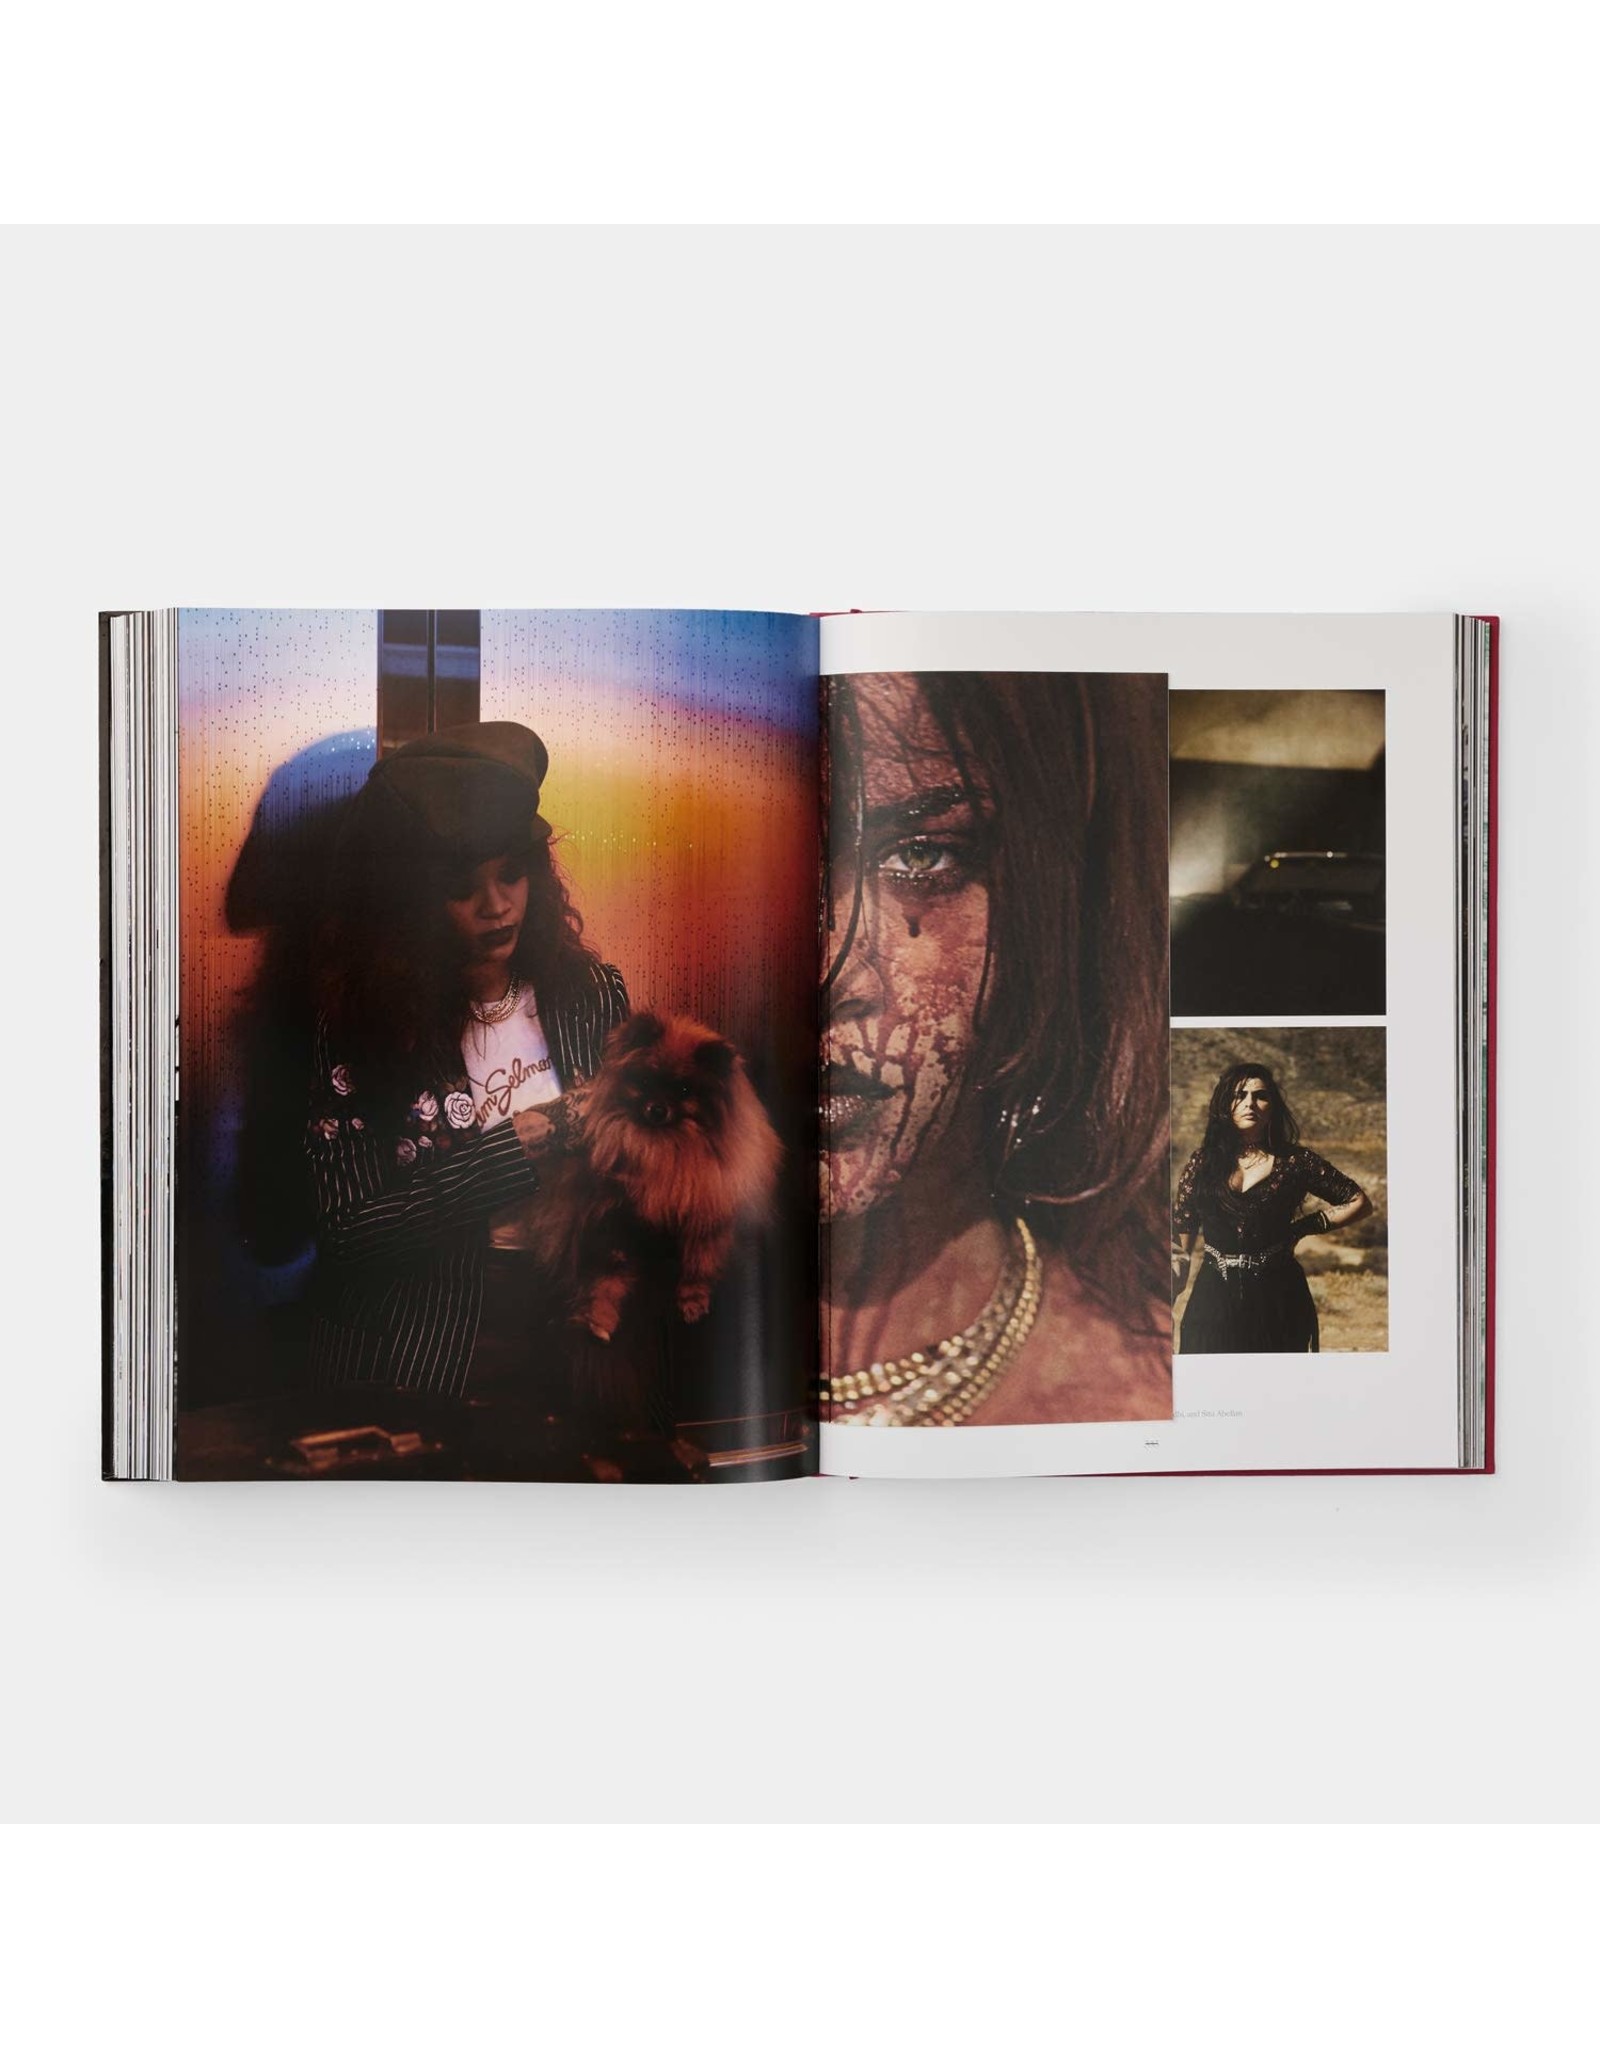 The Rihanna Book by Rihanna